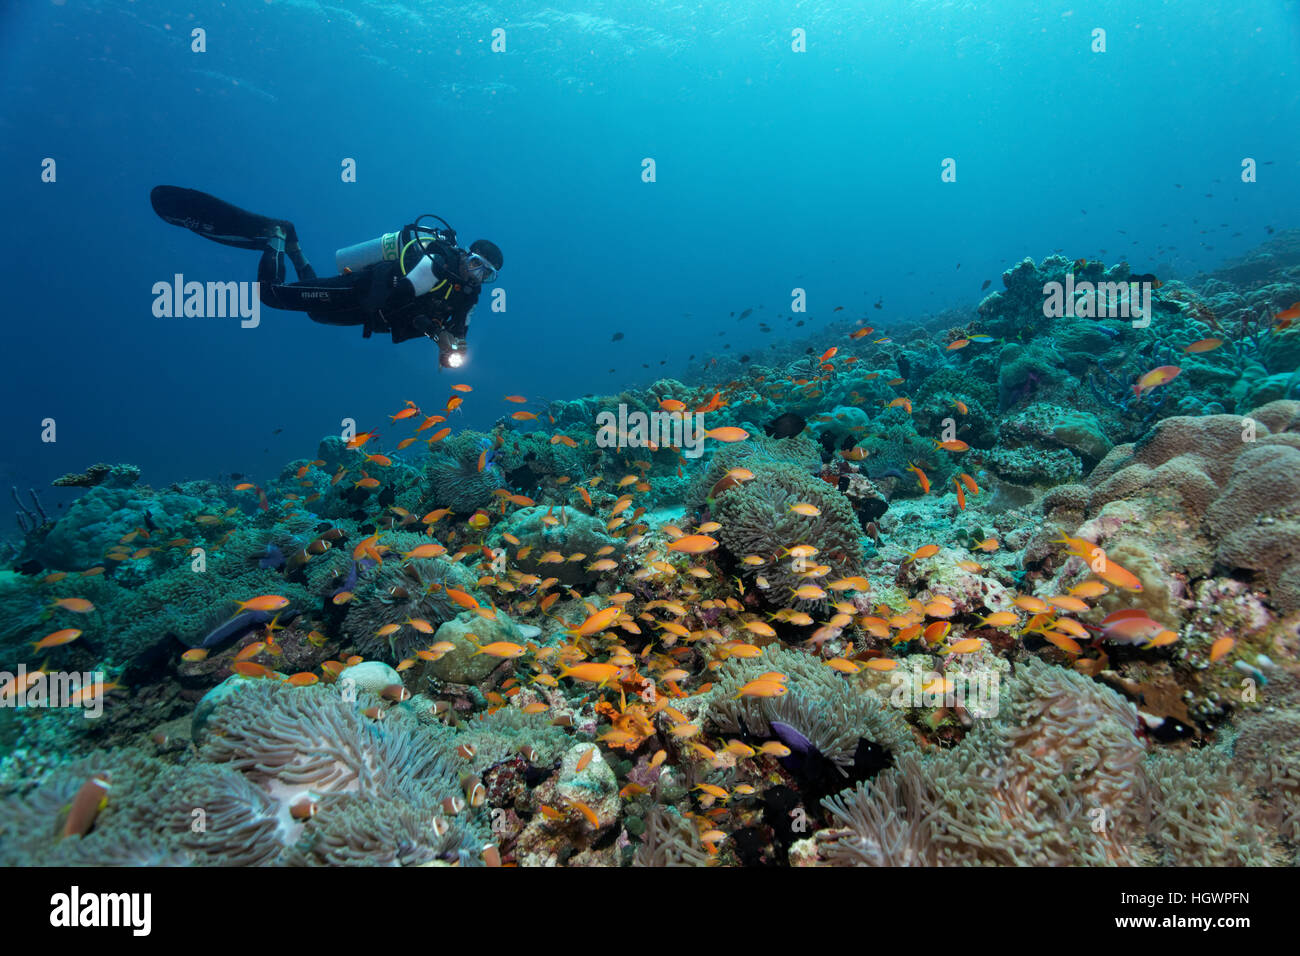 Avec de magnifiques récifs coralliens des anémones de mer (Heteractis magnifica) et jaune (Anthiidae tile), plongeur observant Banque D'Images